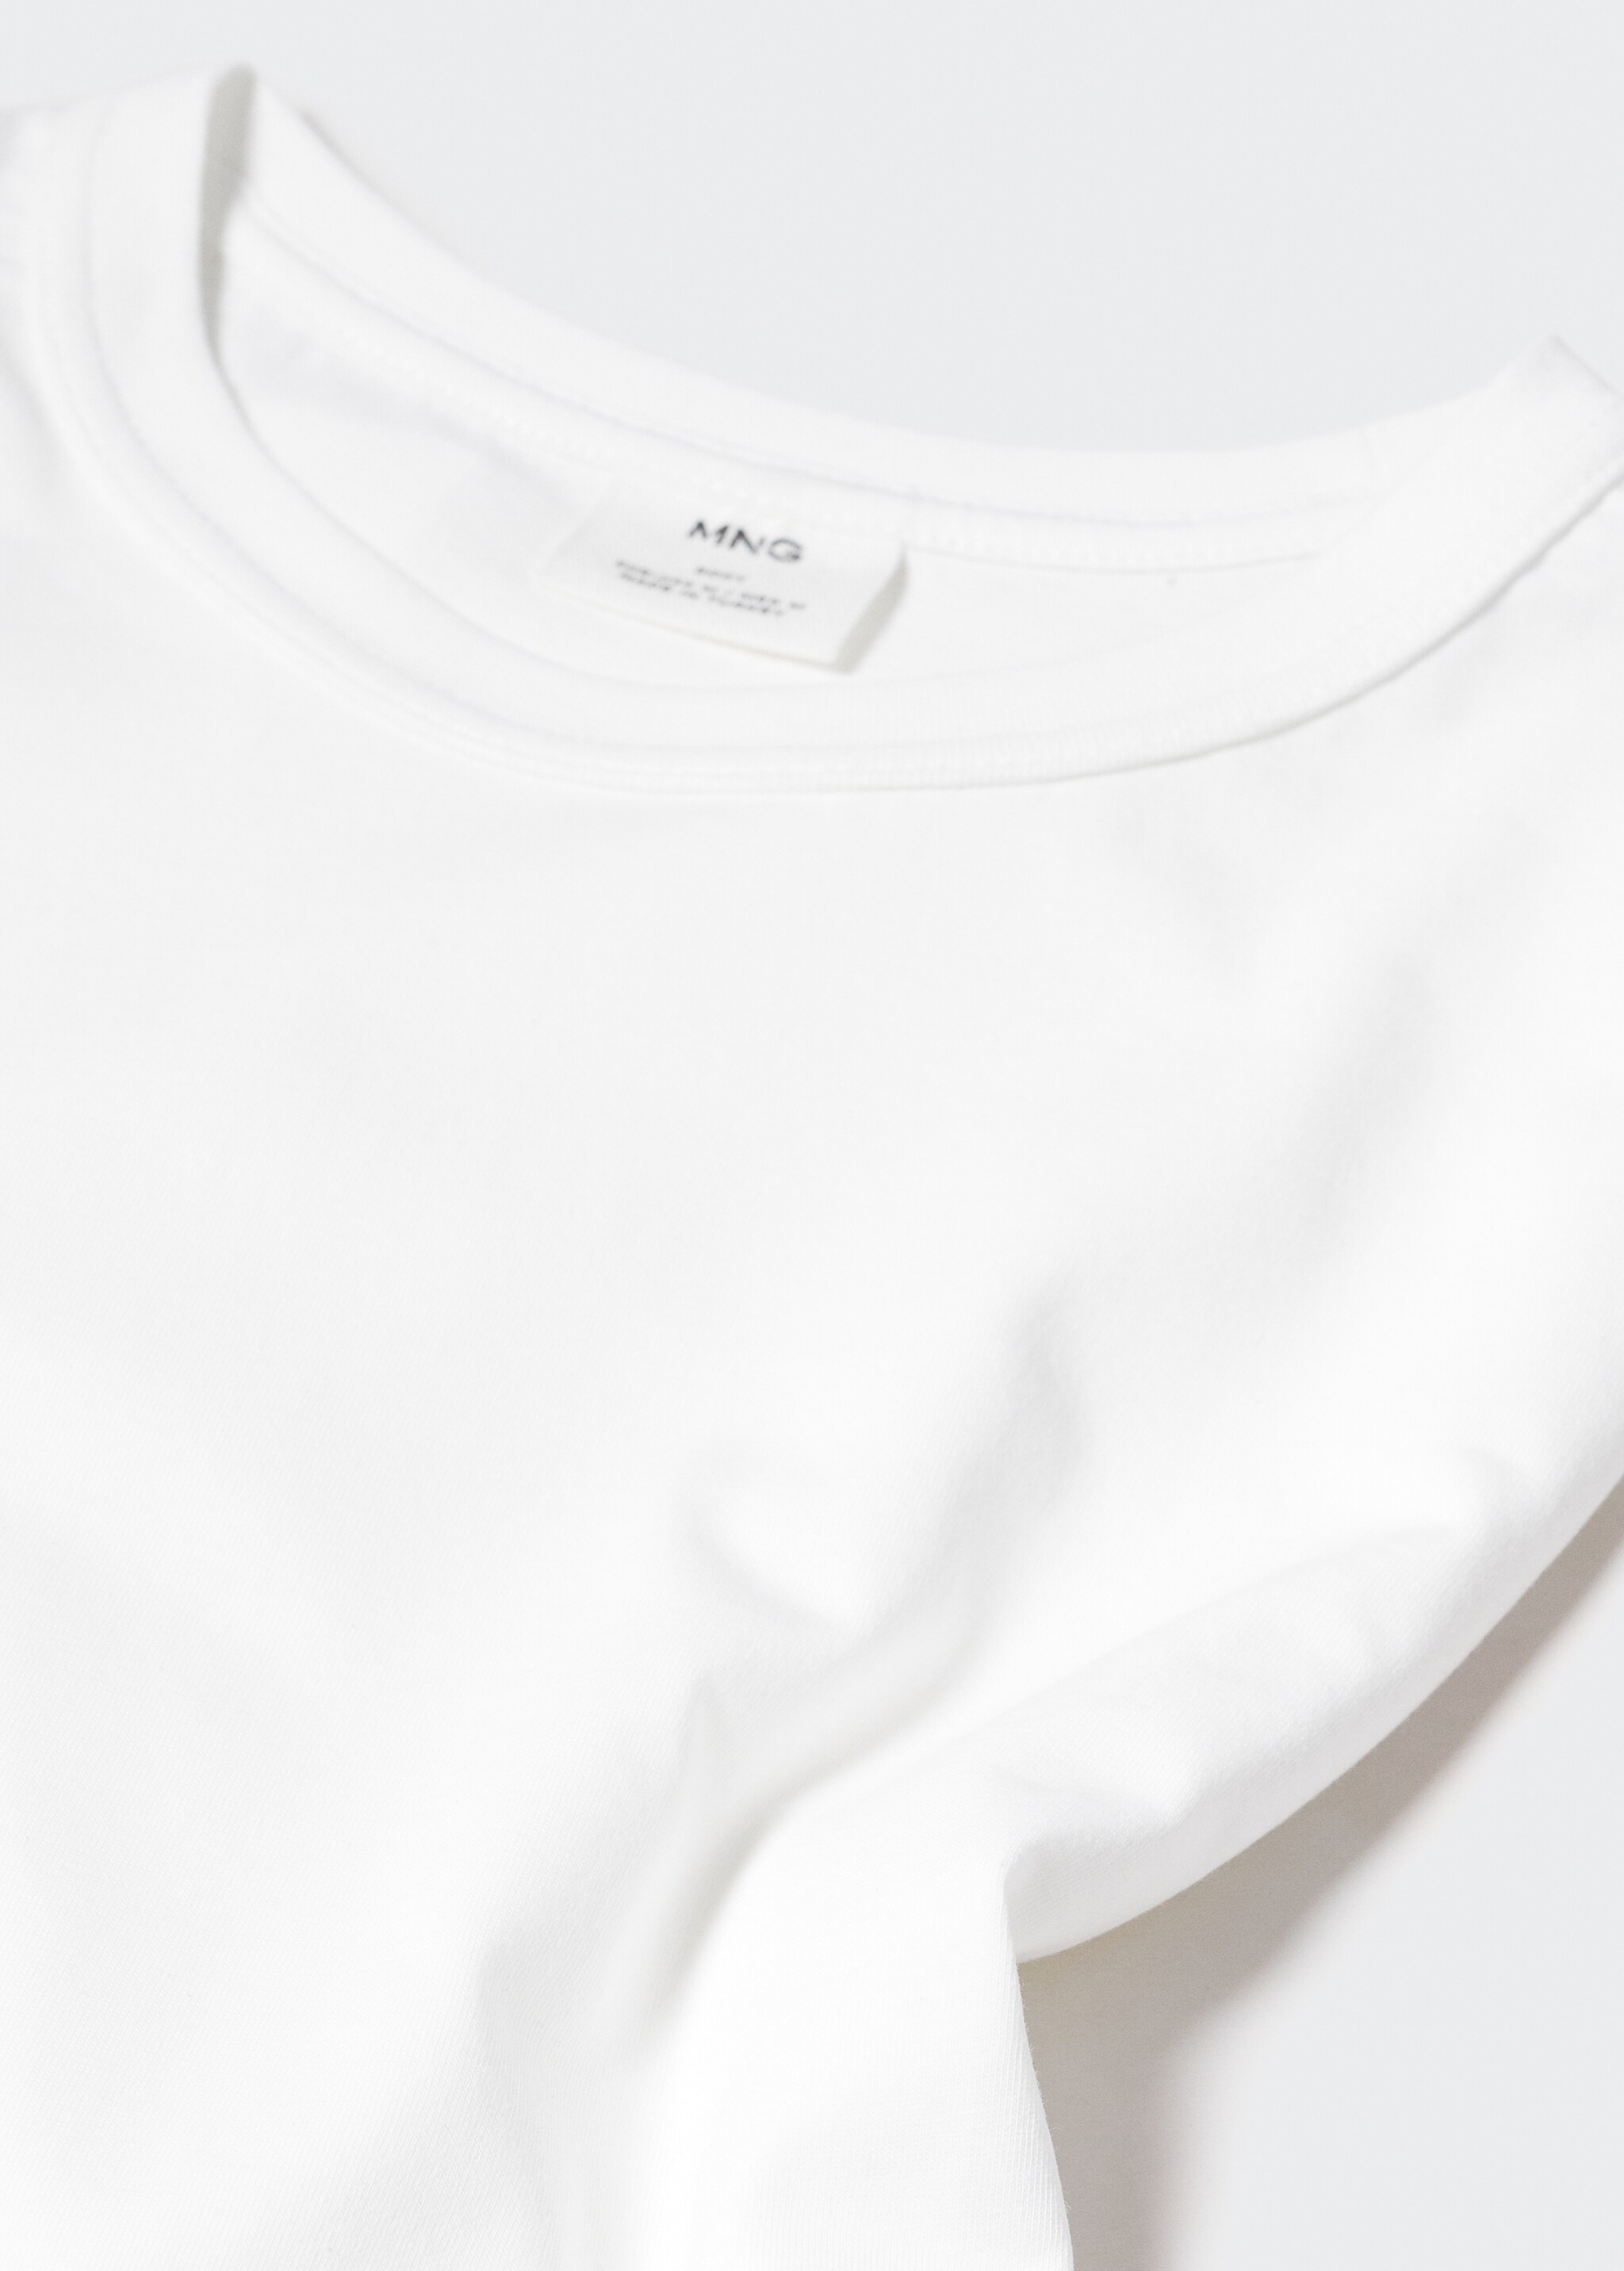 Camiseta 100% algodón relaxed fit - Detalle del artículo 8